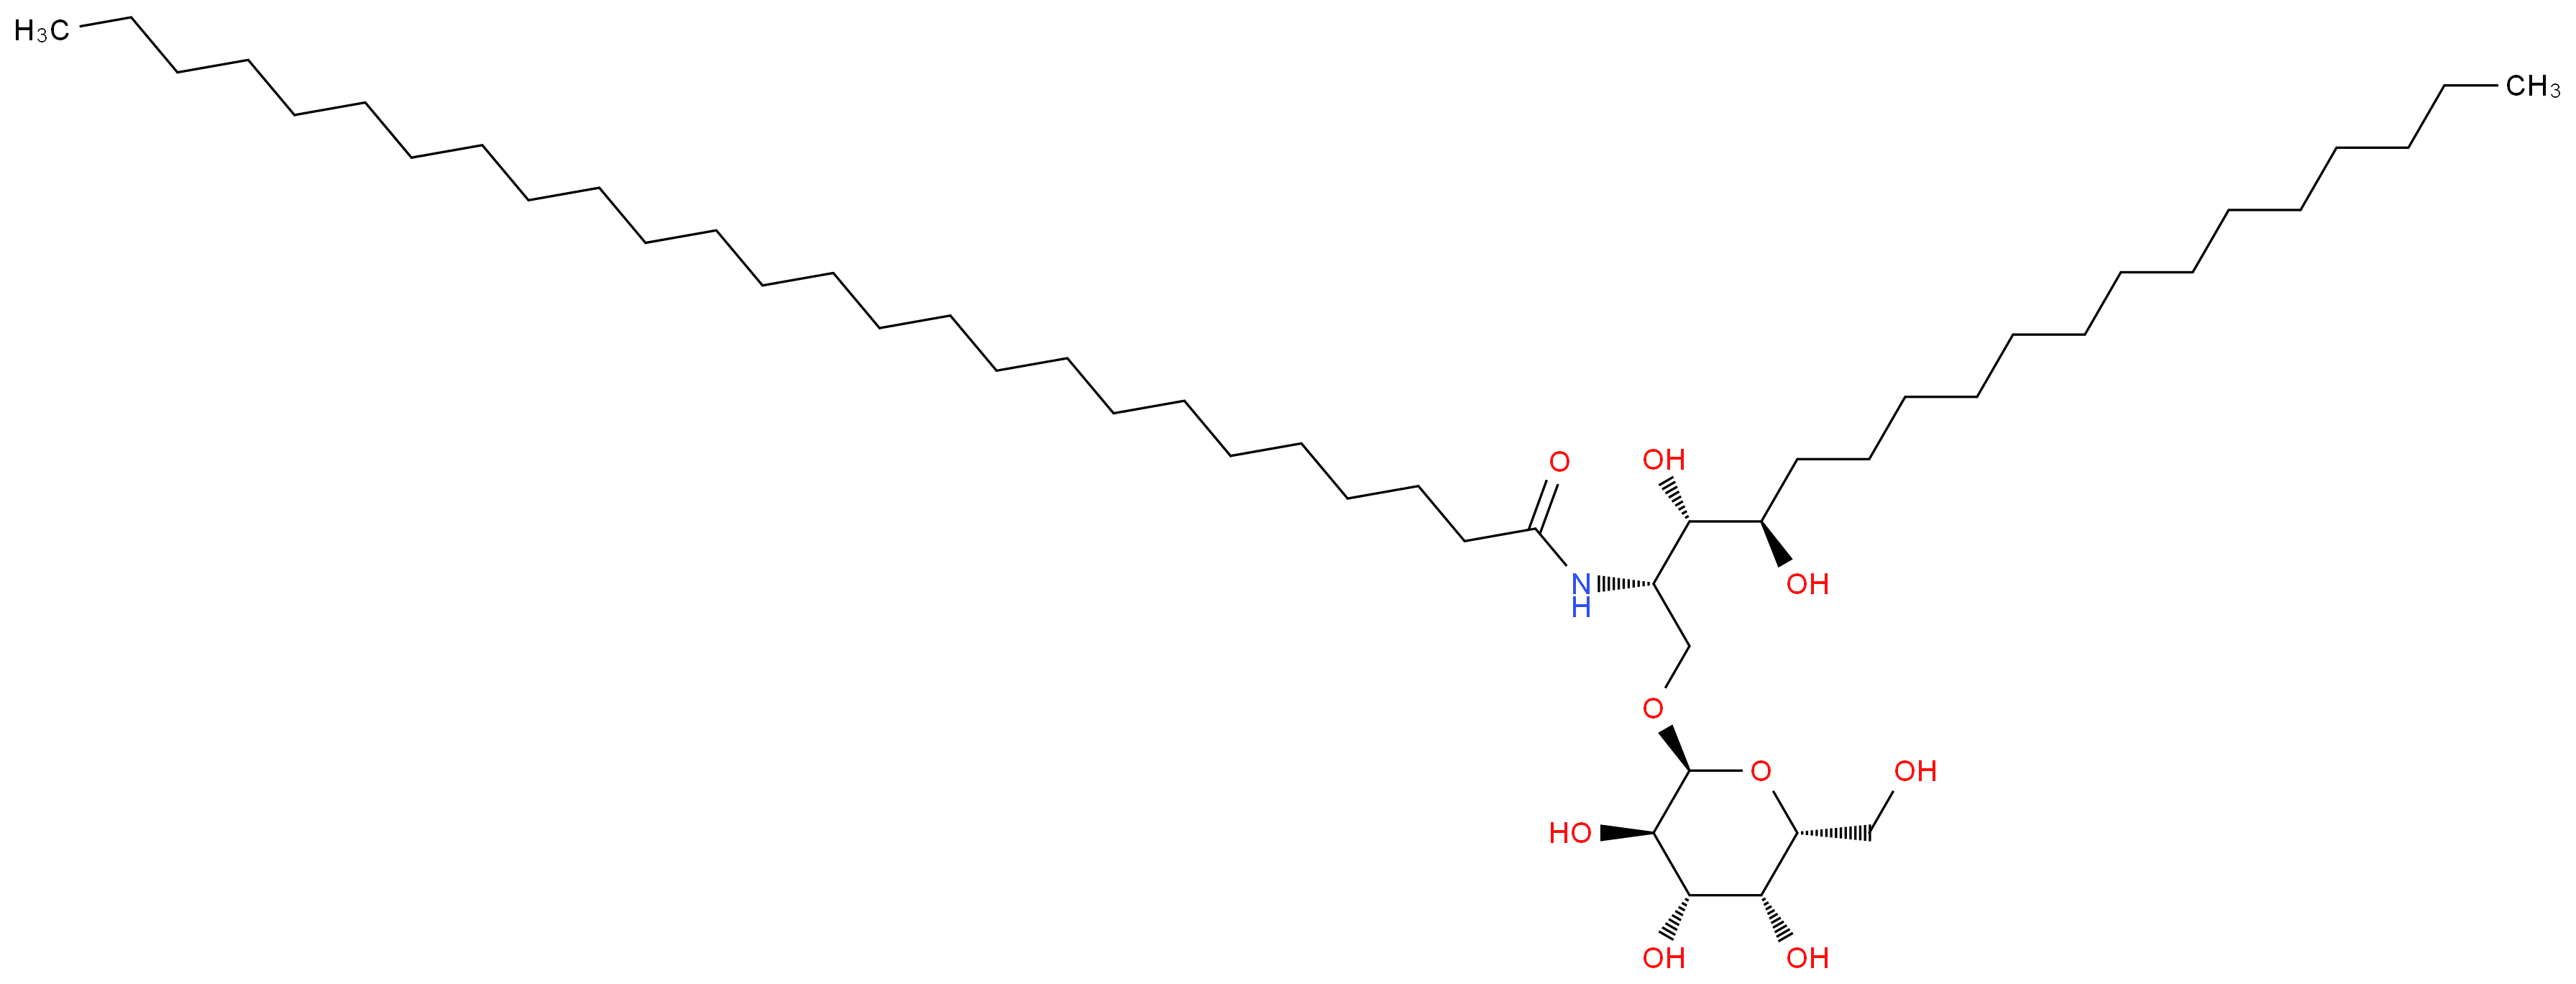 158021-47-7 molecular structure